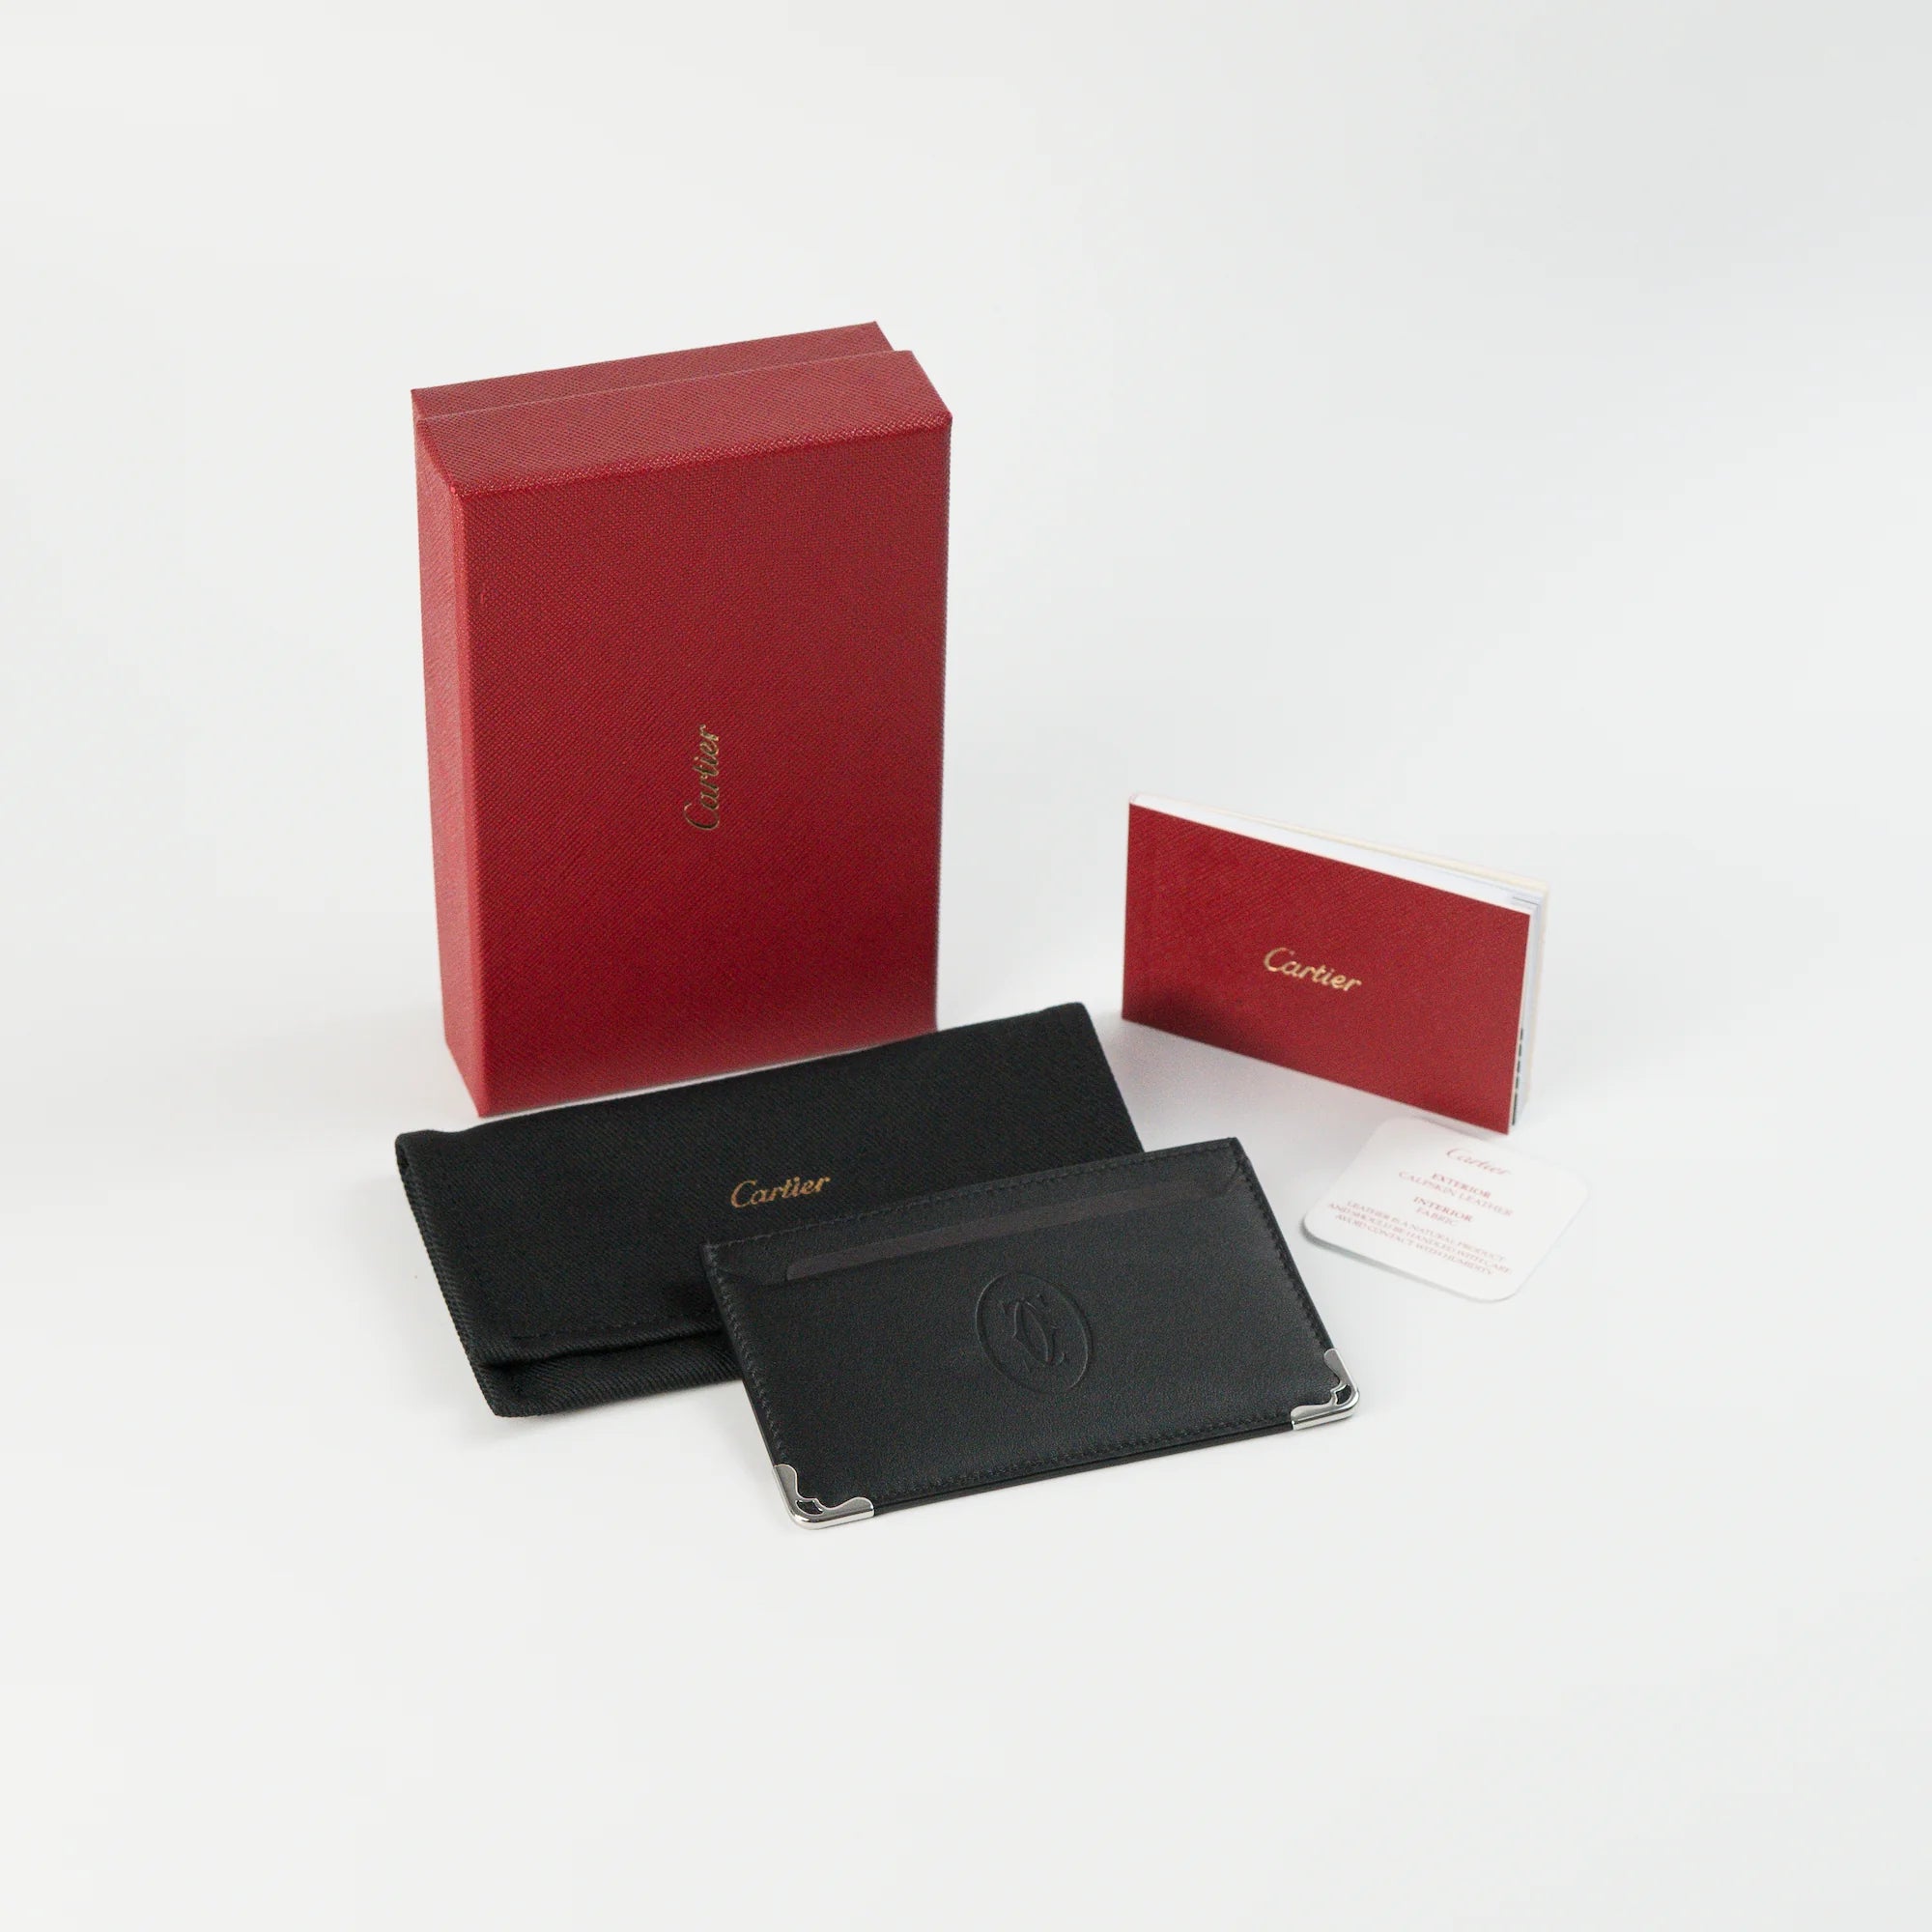 Lieferumfang des des schwarzen Cardholders von Cartier aus schwarzem Leder, bestehend aus Kartenetui, Umverp#ackung und Papieren